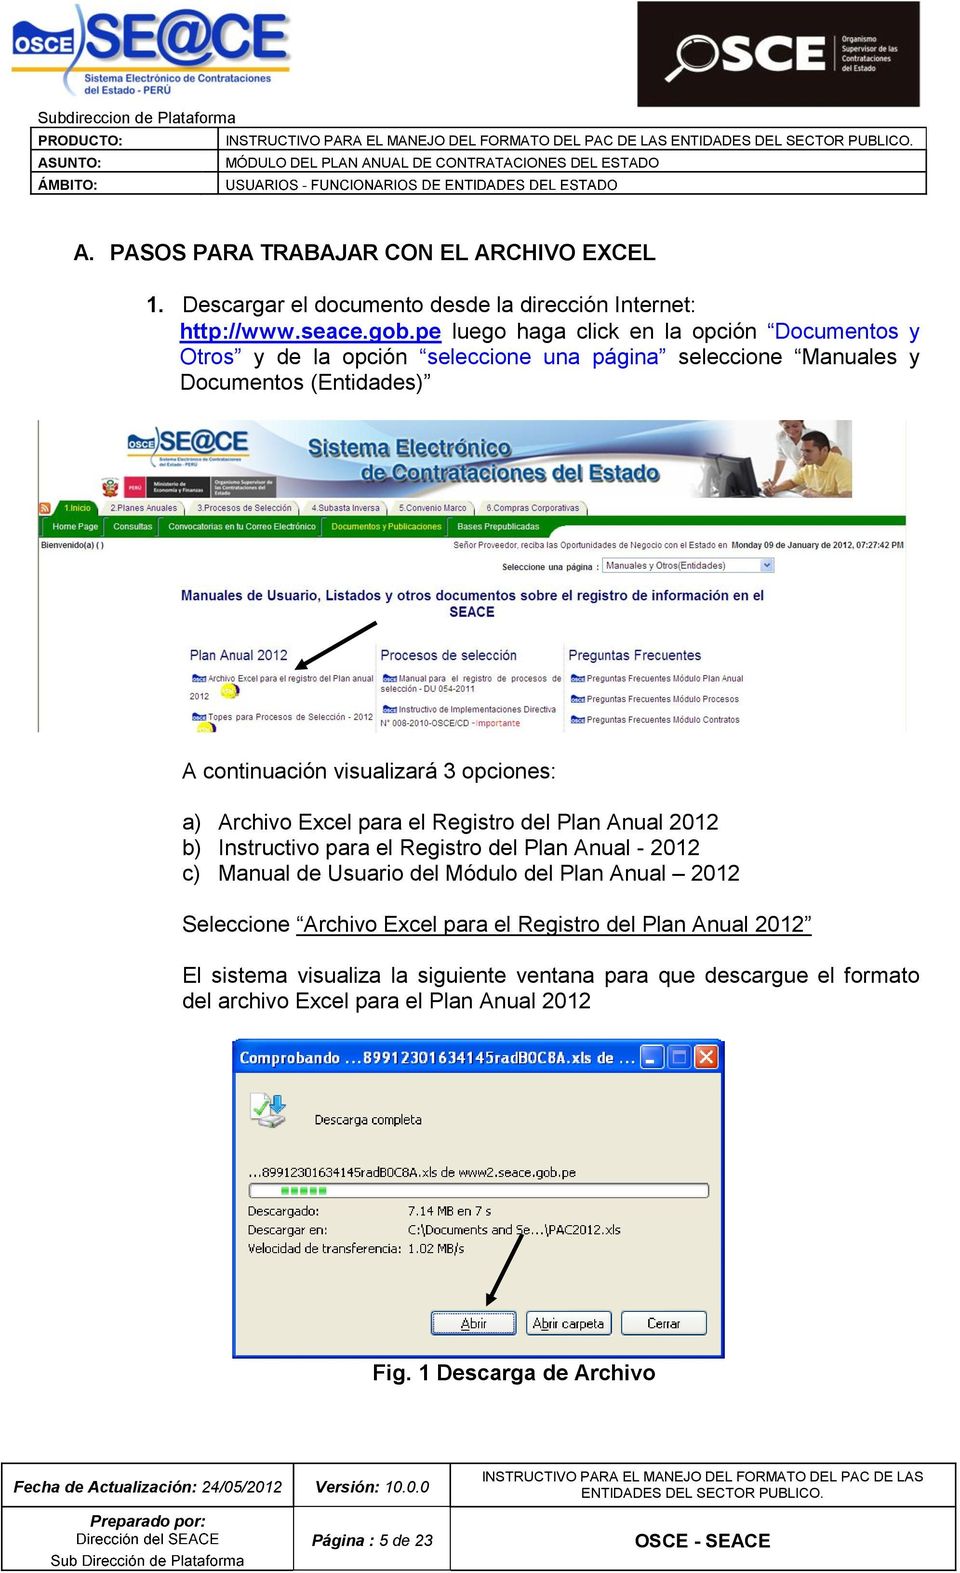 a) Archiv Excel para el Registr del Plan Anual 2012 b) Instructiv para el Registr del Plan Anual - 2012 c) Manual de Usuari del Módul del Plan Anual 2012